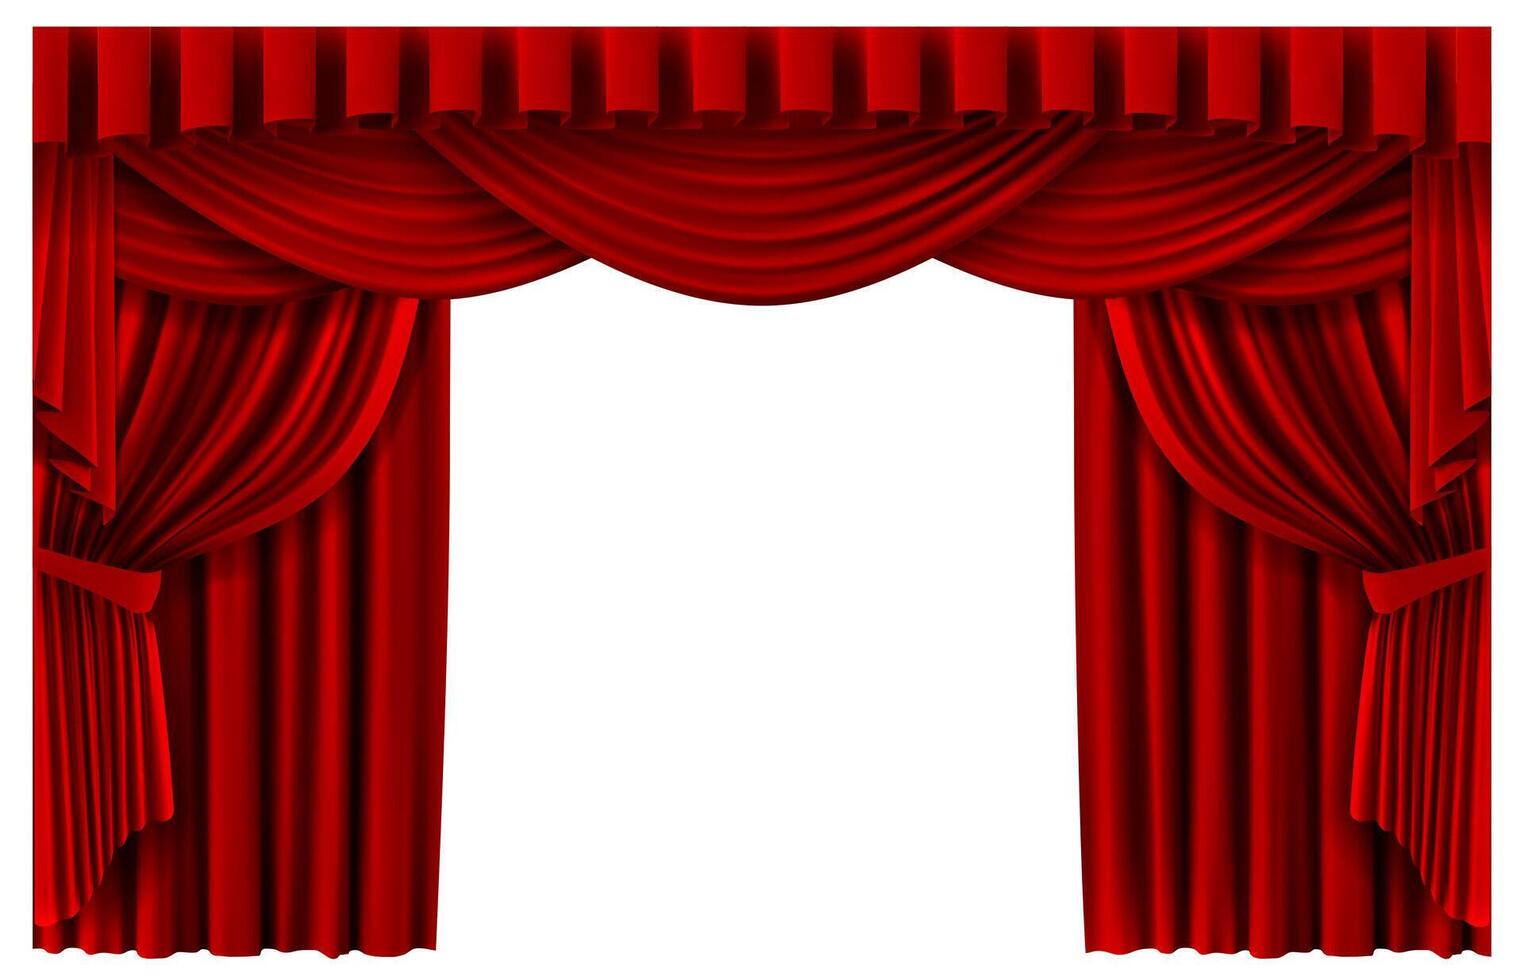 röd skede ridå. realistisk teater scen bakgrund, bio premiär portiere draperier, rödblommig ceremoni gardiner vektor mall illustration